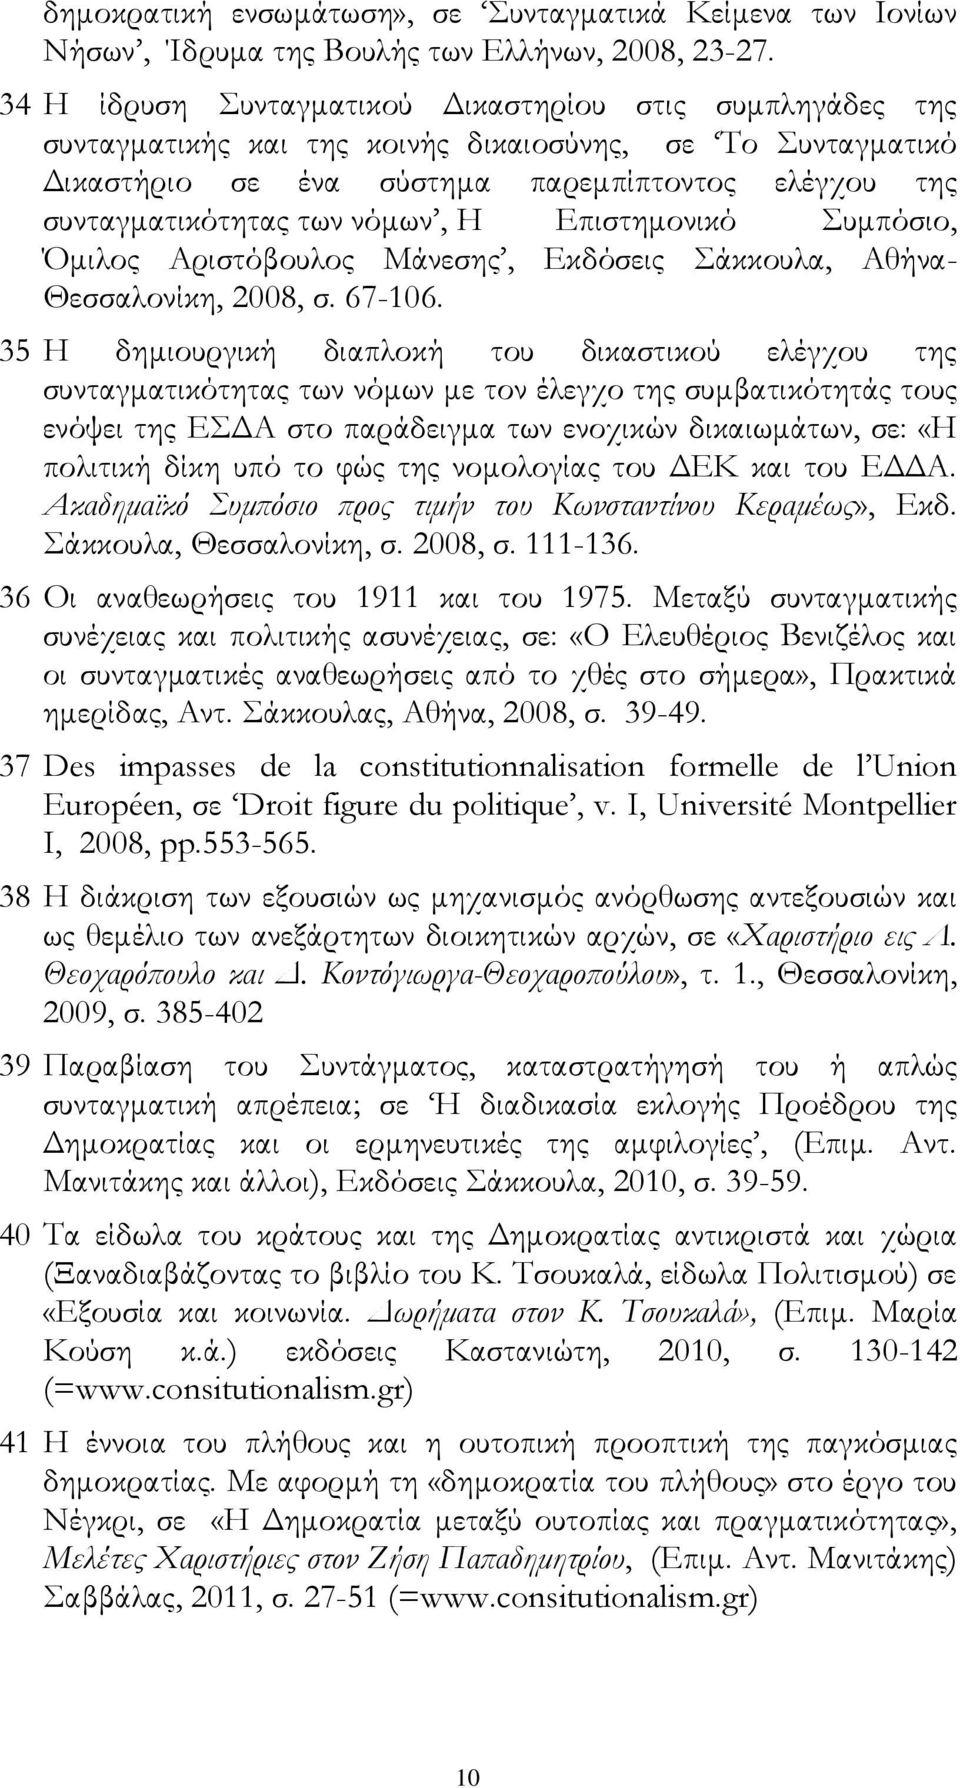 νόμων, H Επιστημονικό Συμπόσιο, Όμιλος Αριστόβουλος Μάνεσης, Εκδόσεις Σάκκουλα, Αθήνα- Θεσσαλονίκη, 2008, σ. 67-106.